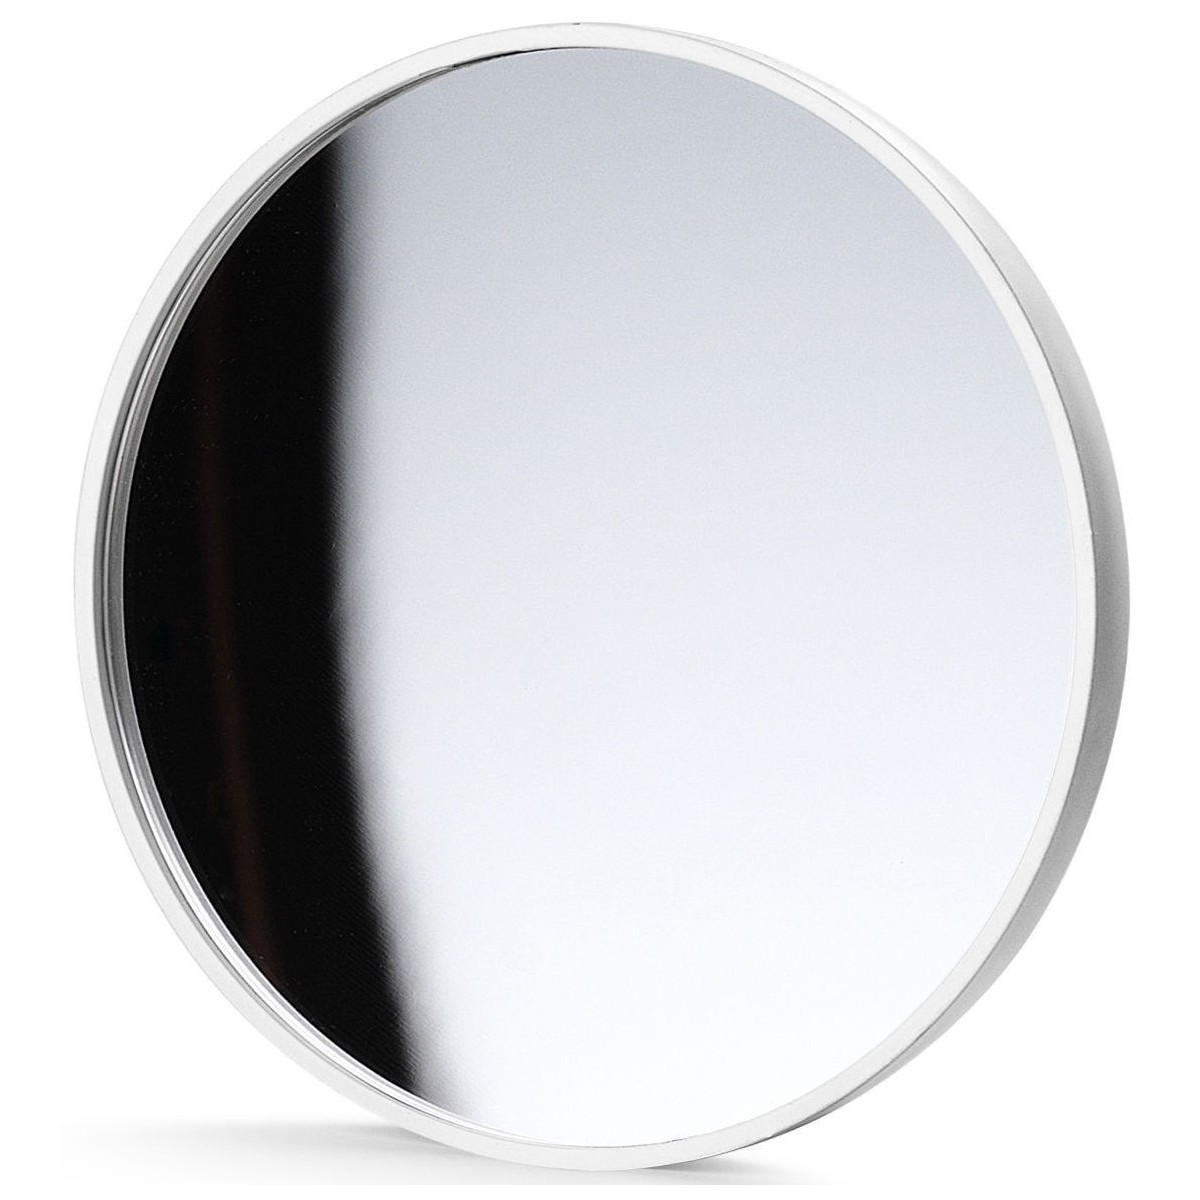 white - mirror - Gaku accessories